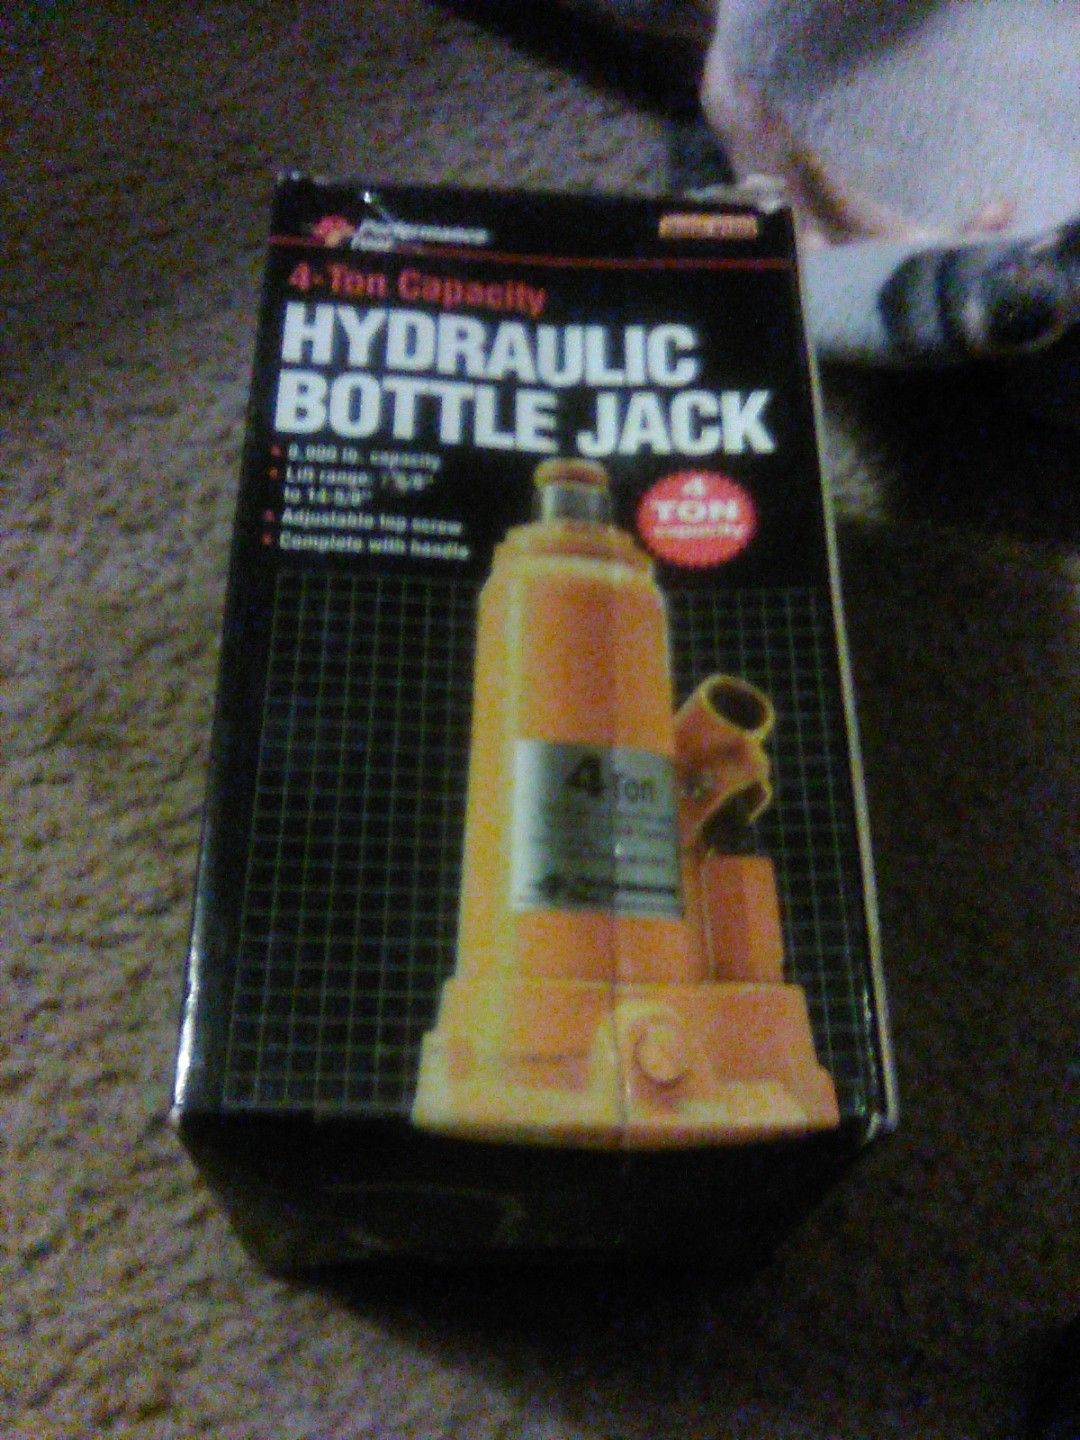 Hydraulic bottle jack 4 ton